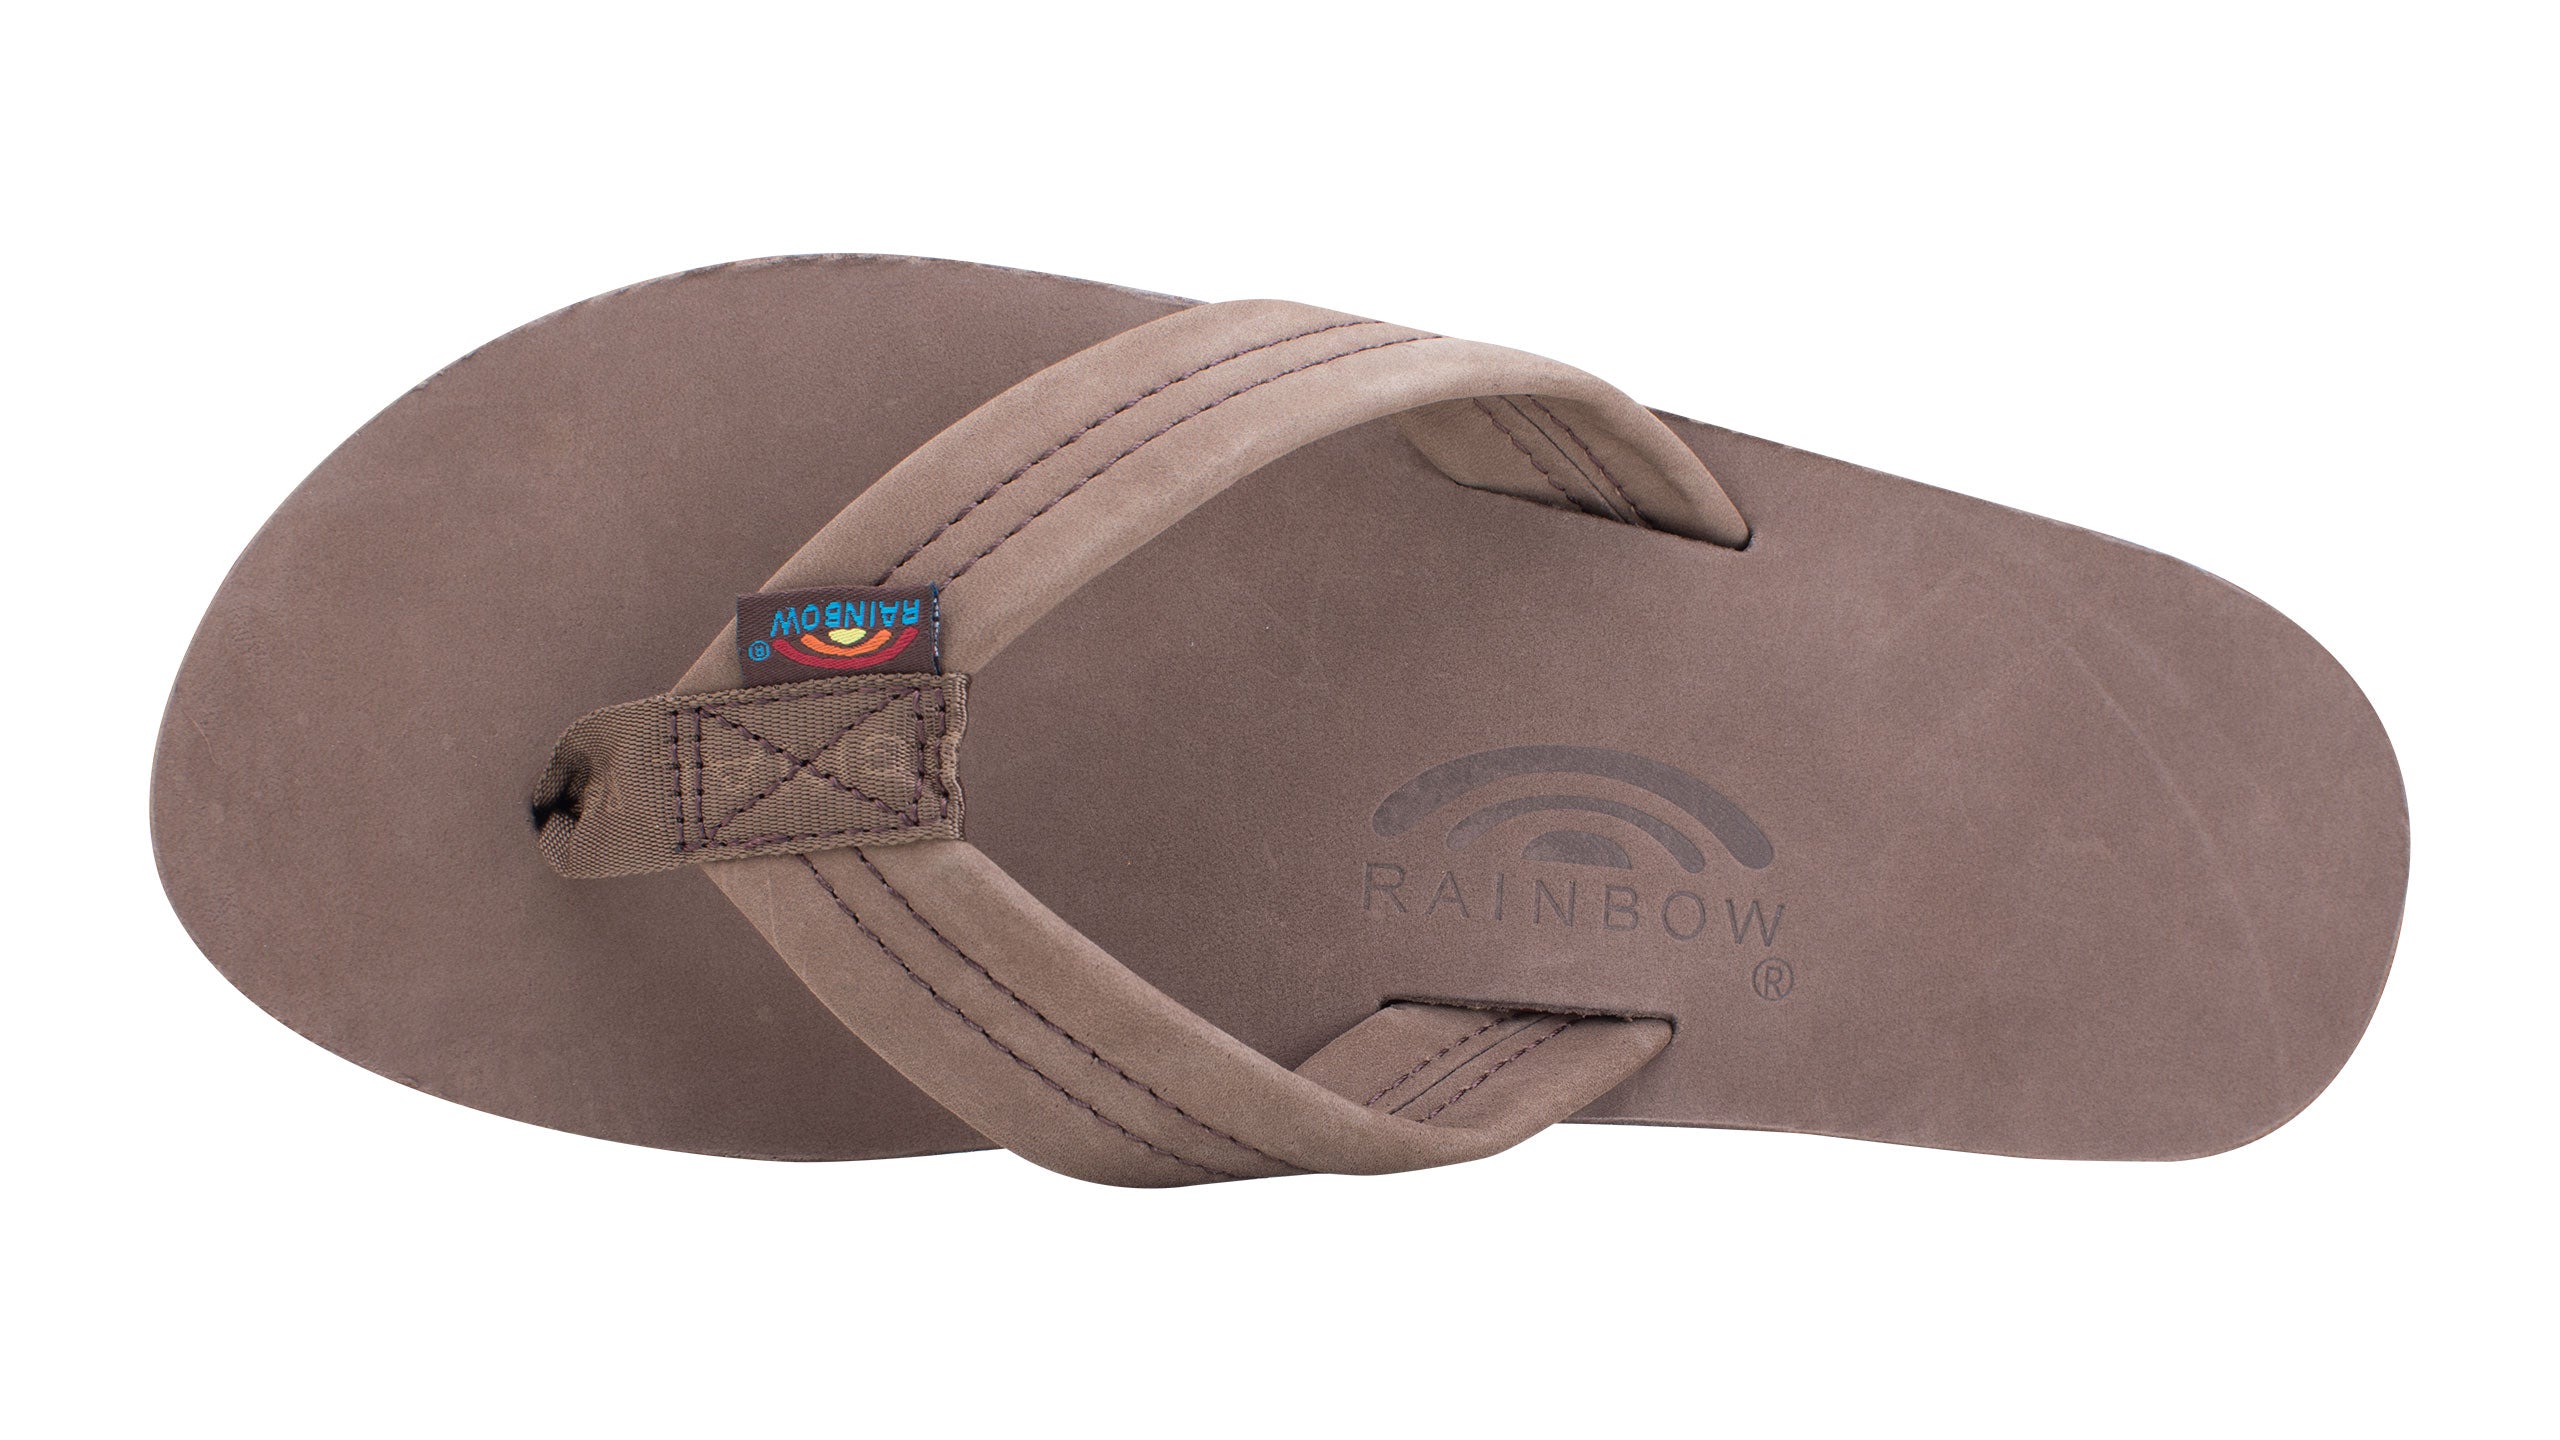 Rainbow Sandals Men's Dark Brown Leather Single Layer Arch Flip Flops